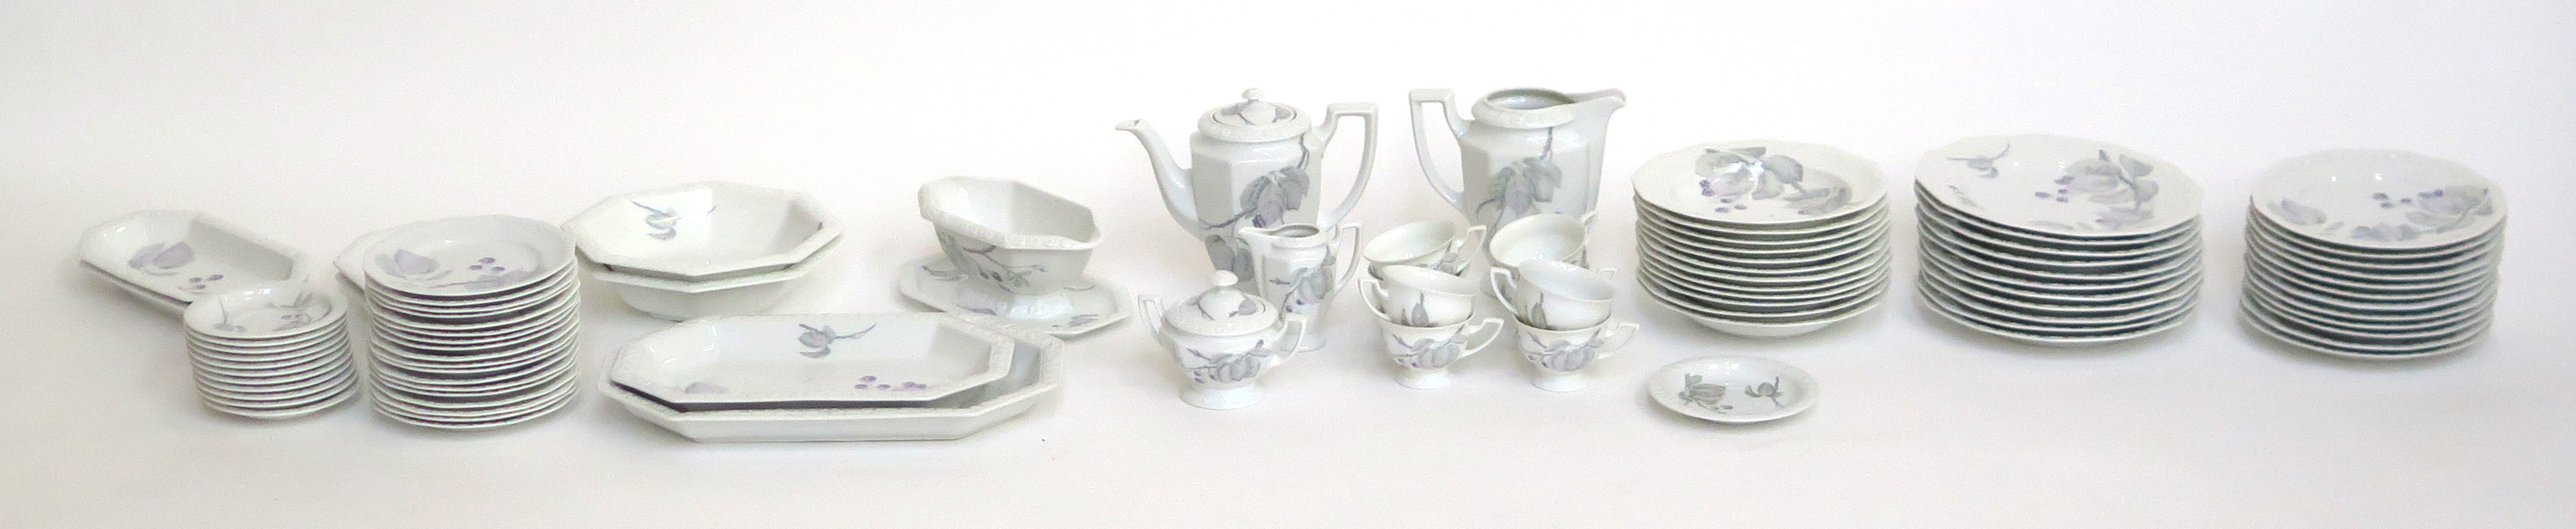 Mat- och kaffeservis, porslin, Maria Björnbär, cirka 70 delar, design 1916, _24550a_lg.jpeg